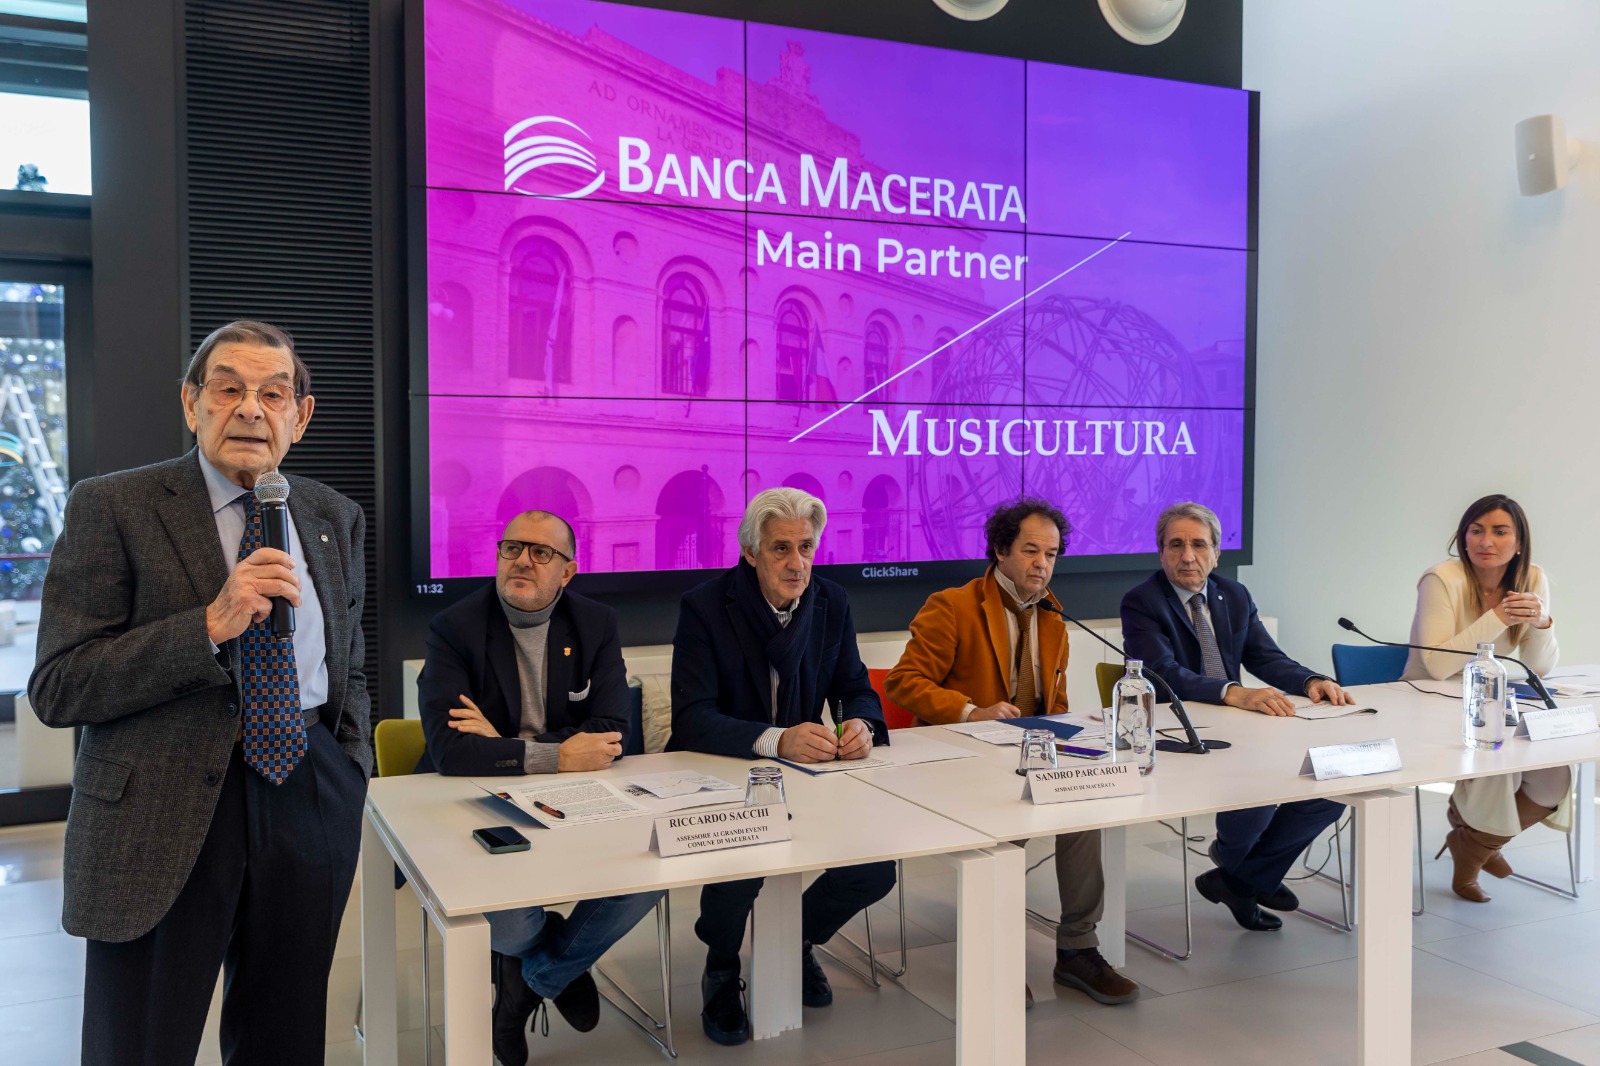 Banca Macerata si conferma main partner di Musicultura per il prossimo triennio | Banca Macerata 4